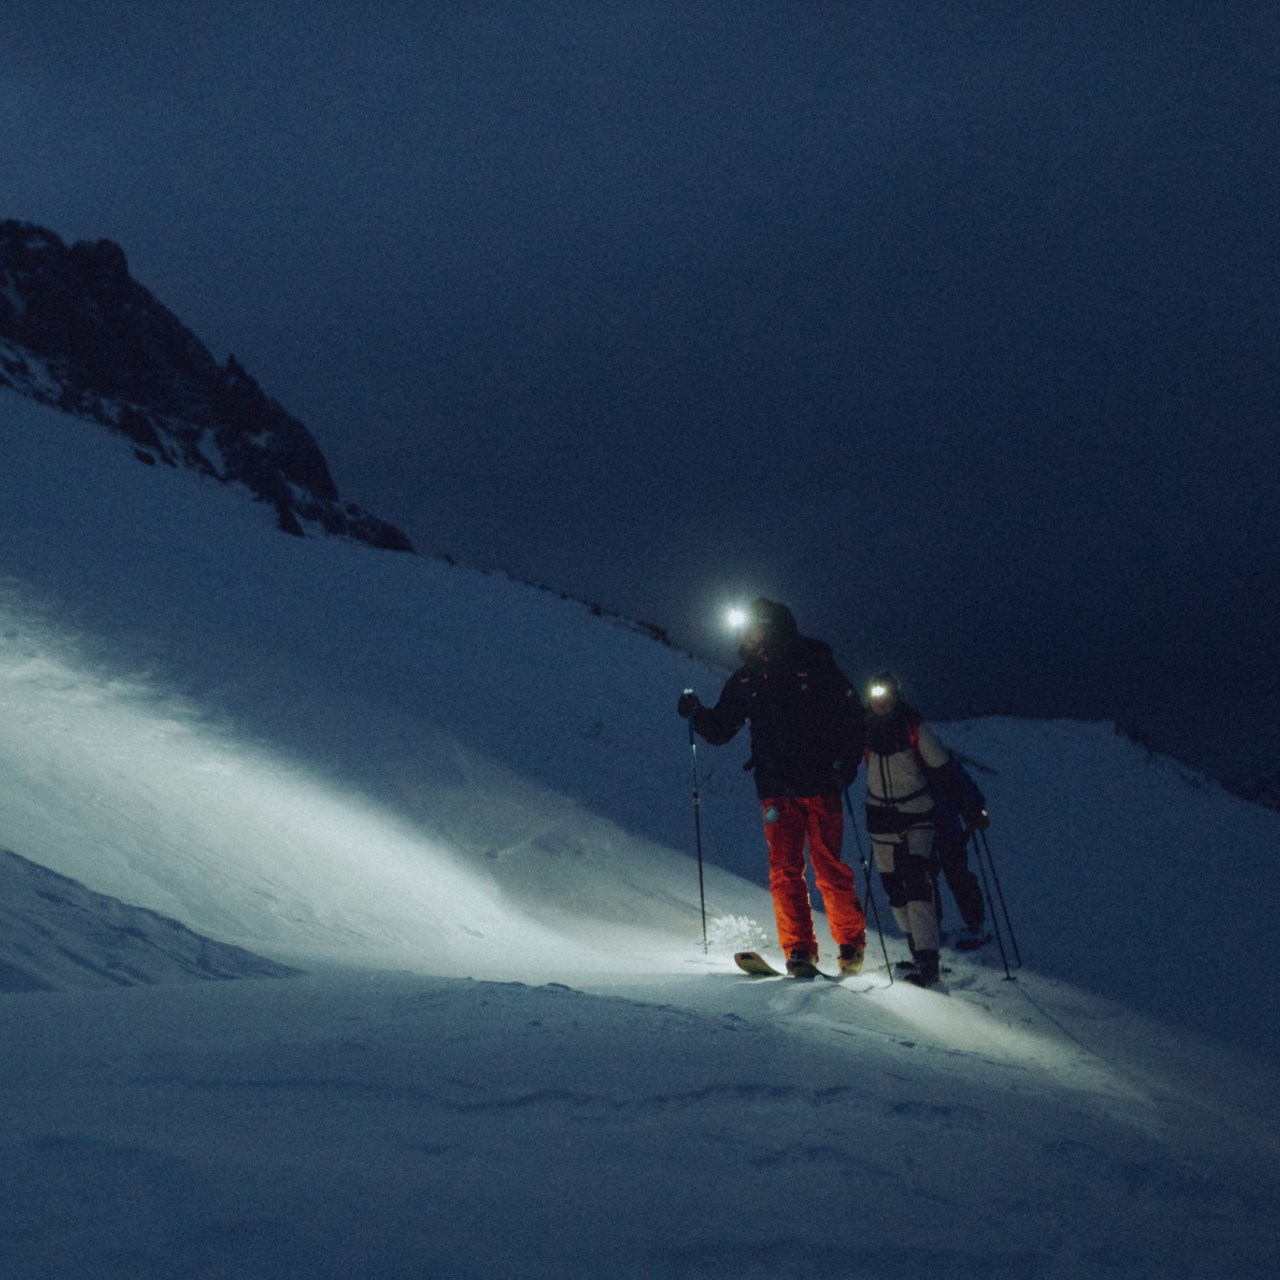 کوهنوردی با سونتو ورتیکال در نقاط بهمن خیز